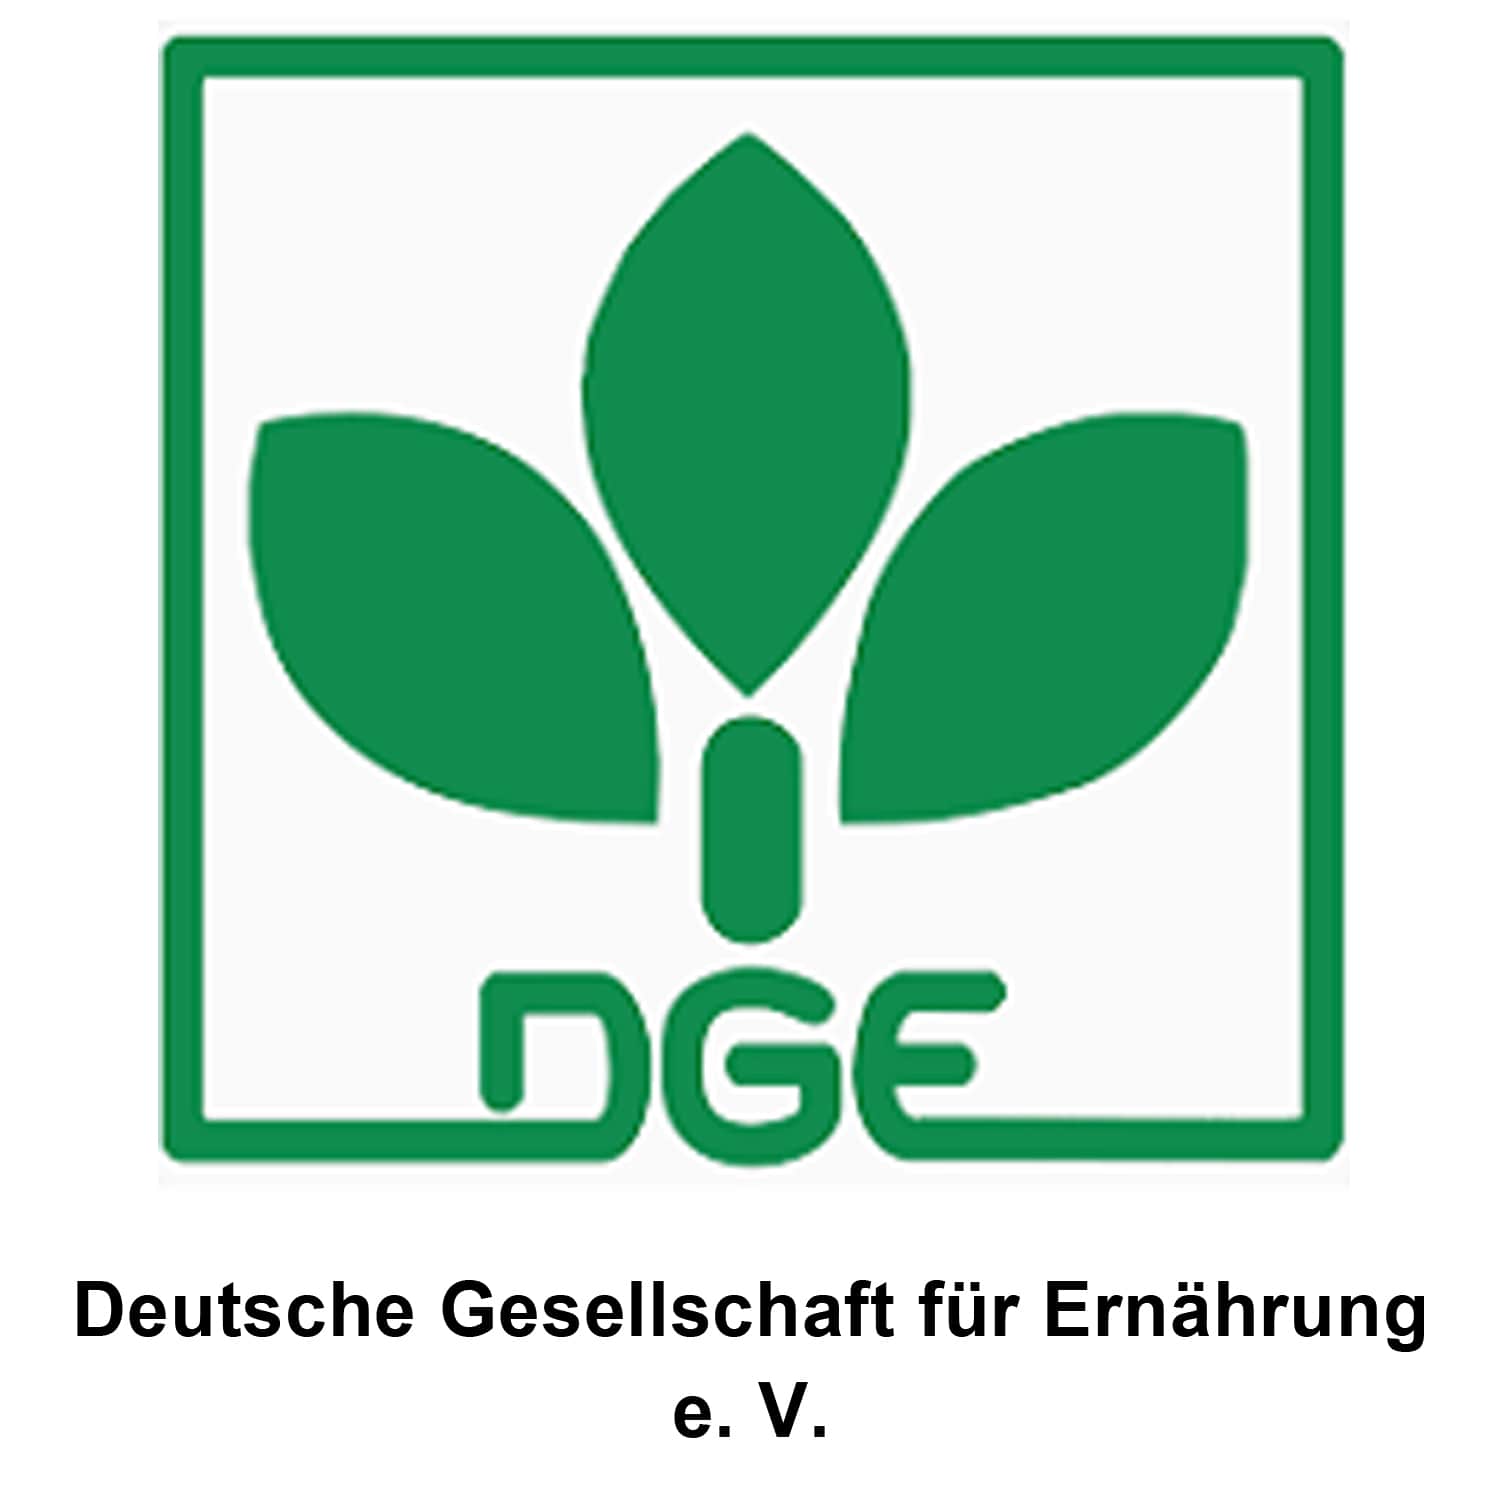 Deutsche Gesellschaft für Ernährung e.V. - DGE